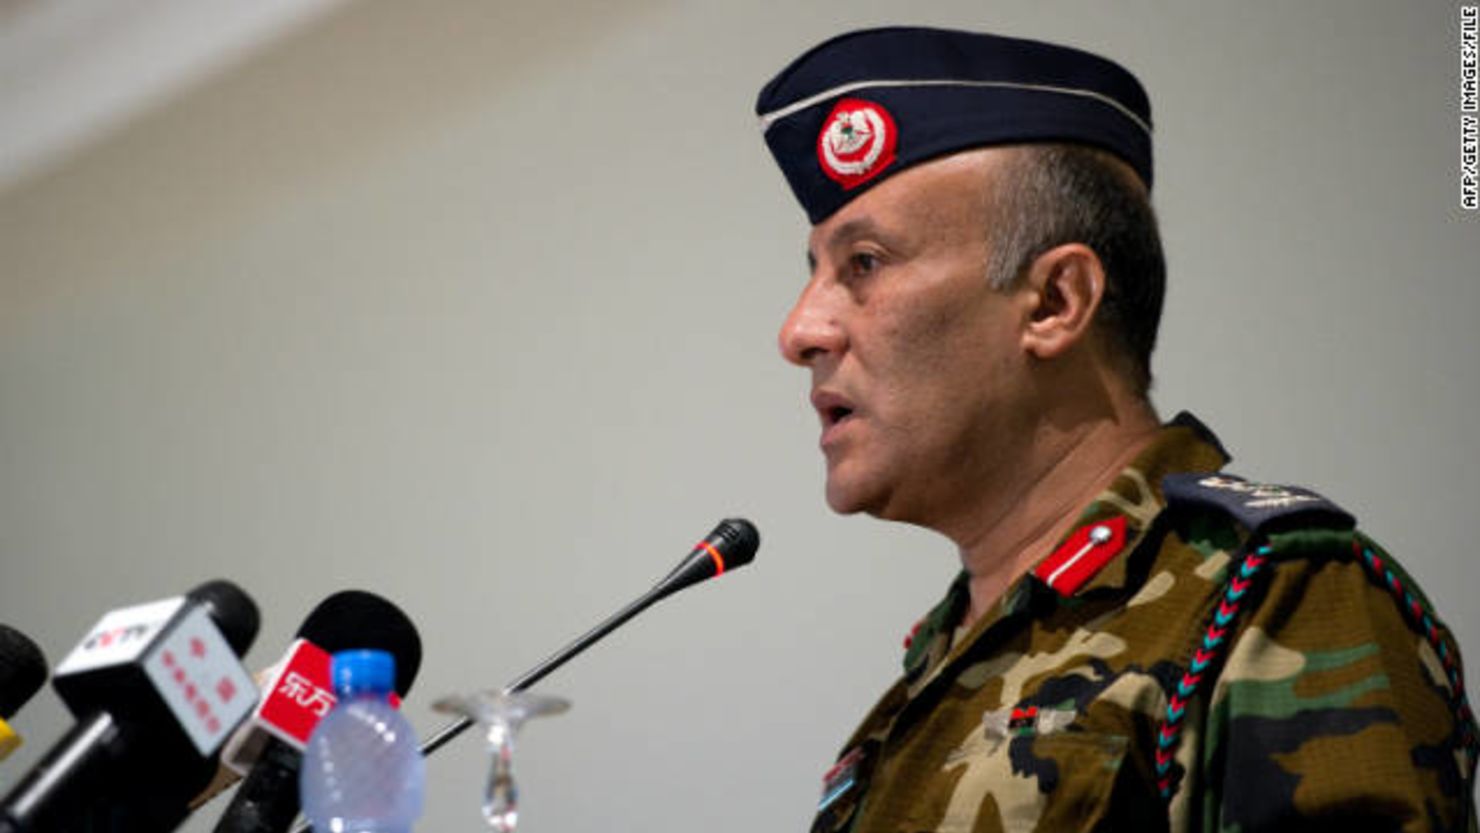 "Hemos encontrado proyectiles de gas mostaza y pedimos a nuestros amigos venir y ayudarnos", dijo el coronel Ahmed Bani.